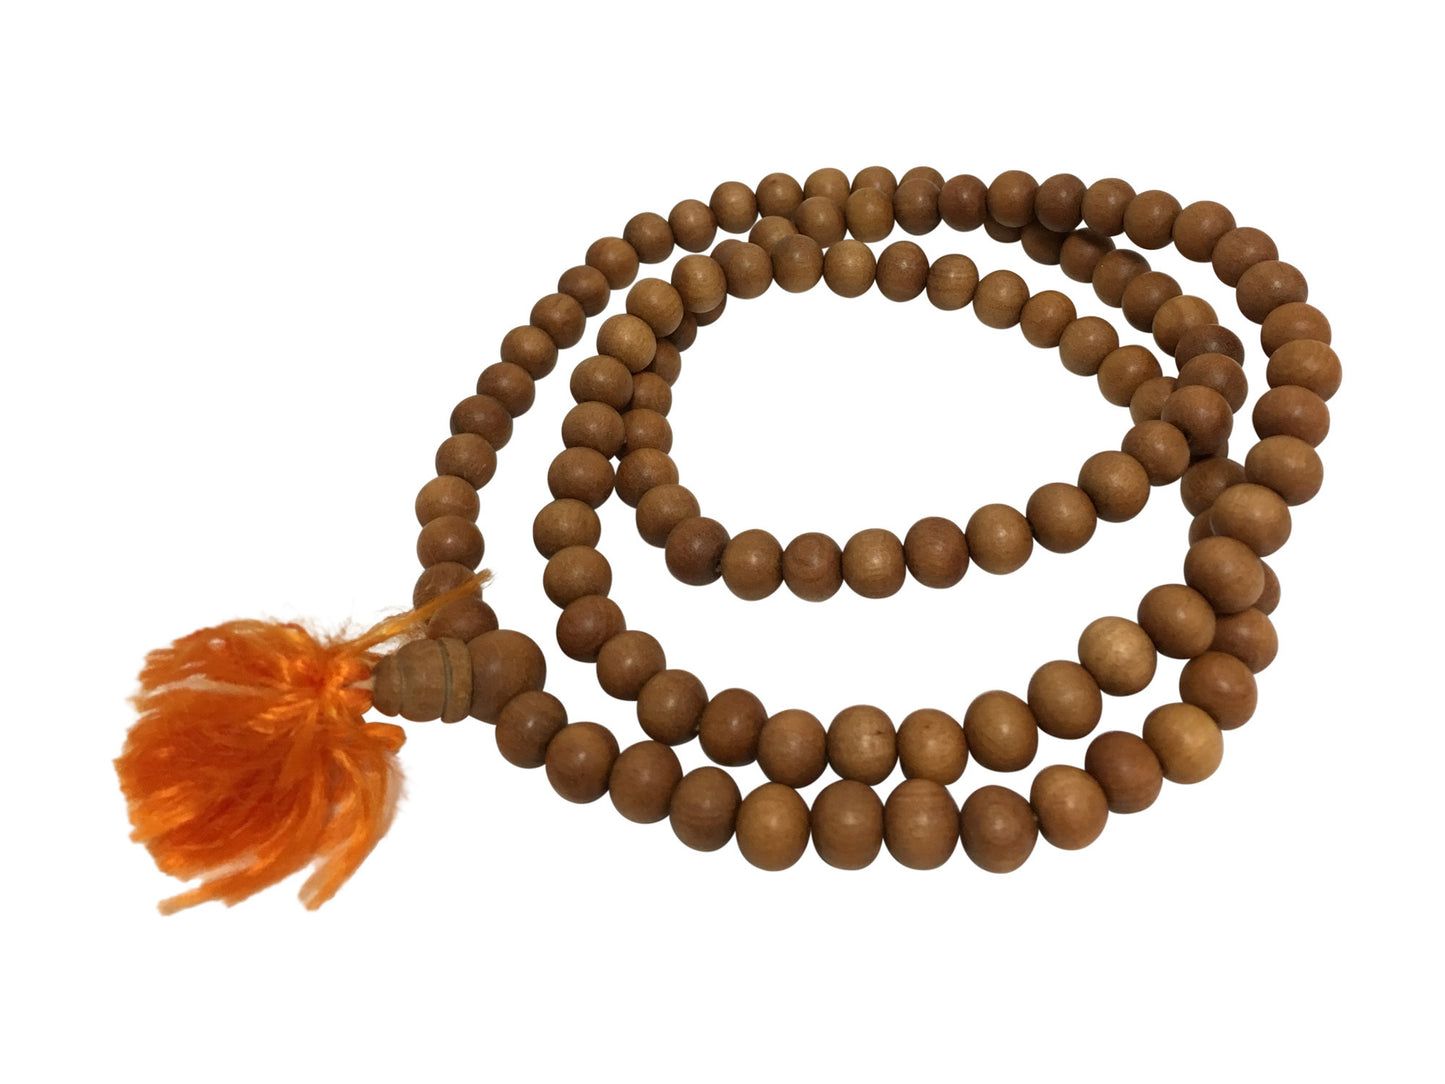 Handmade 6mm Genuine Sandalwood Yoga Meditation Prayer Mala Bead Necklace - Ambali Fashion Necklaces 